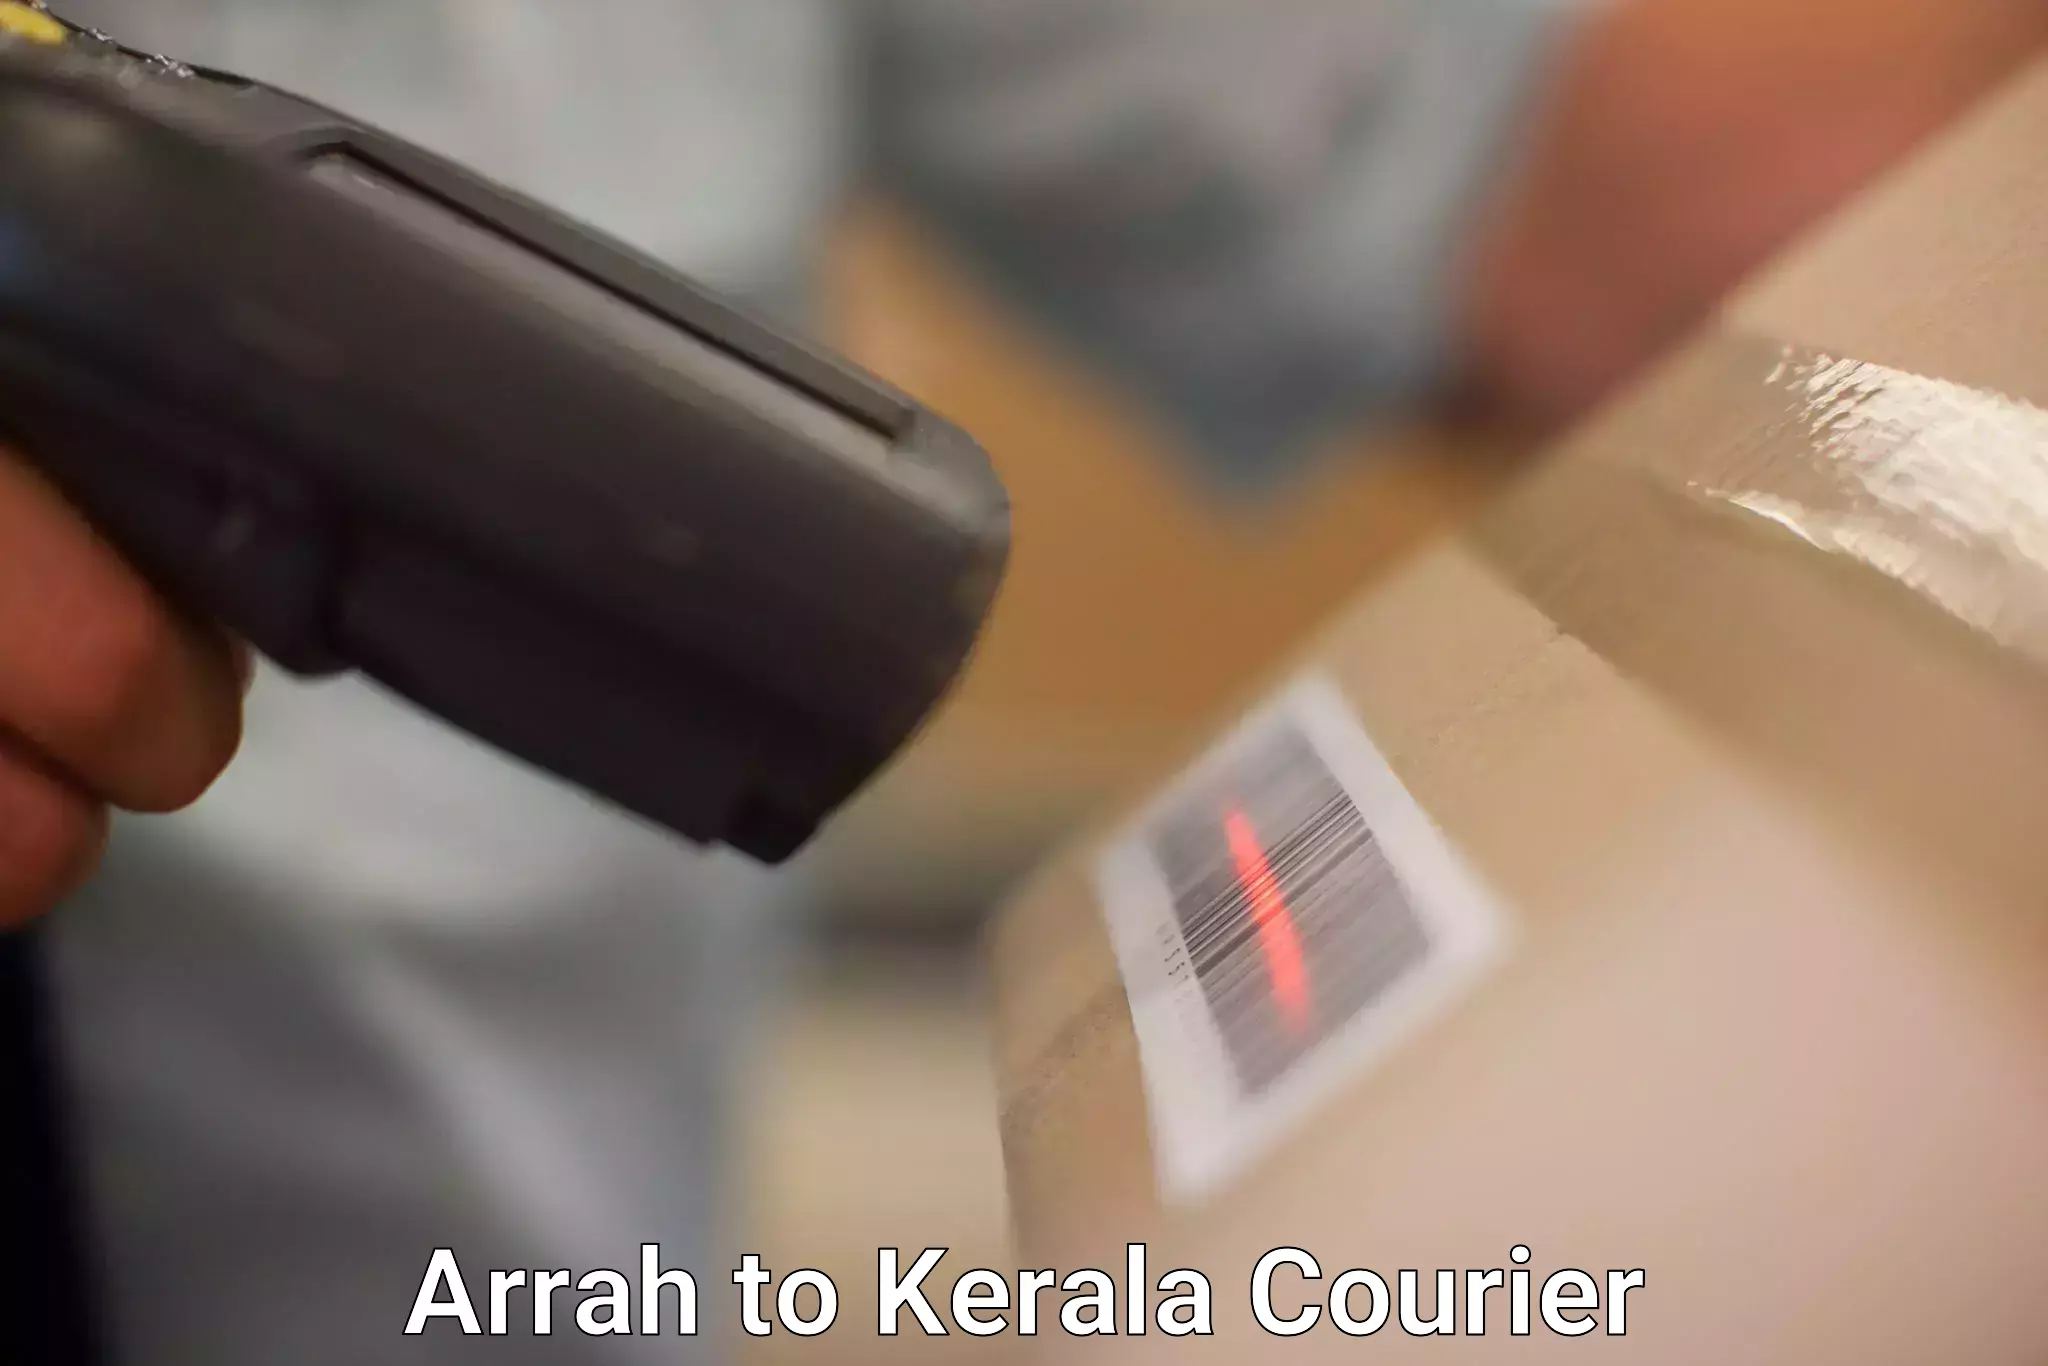 Next-generation courier services Arrah to Kerala